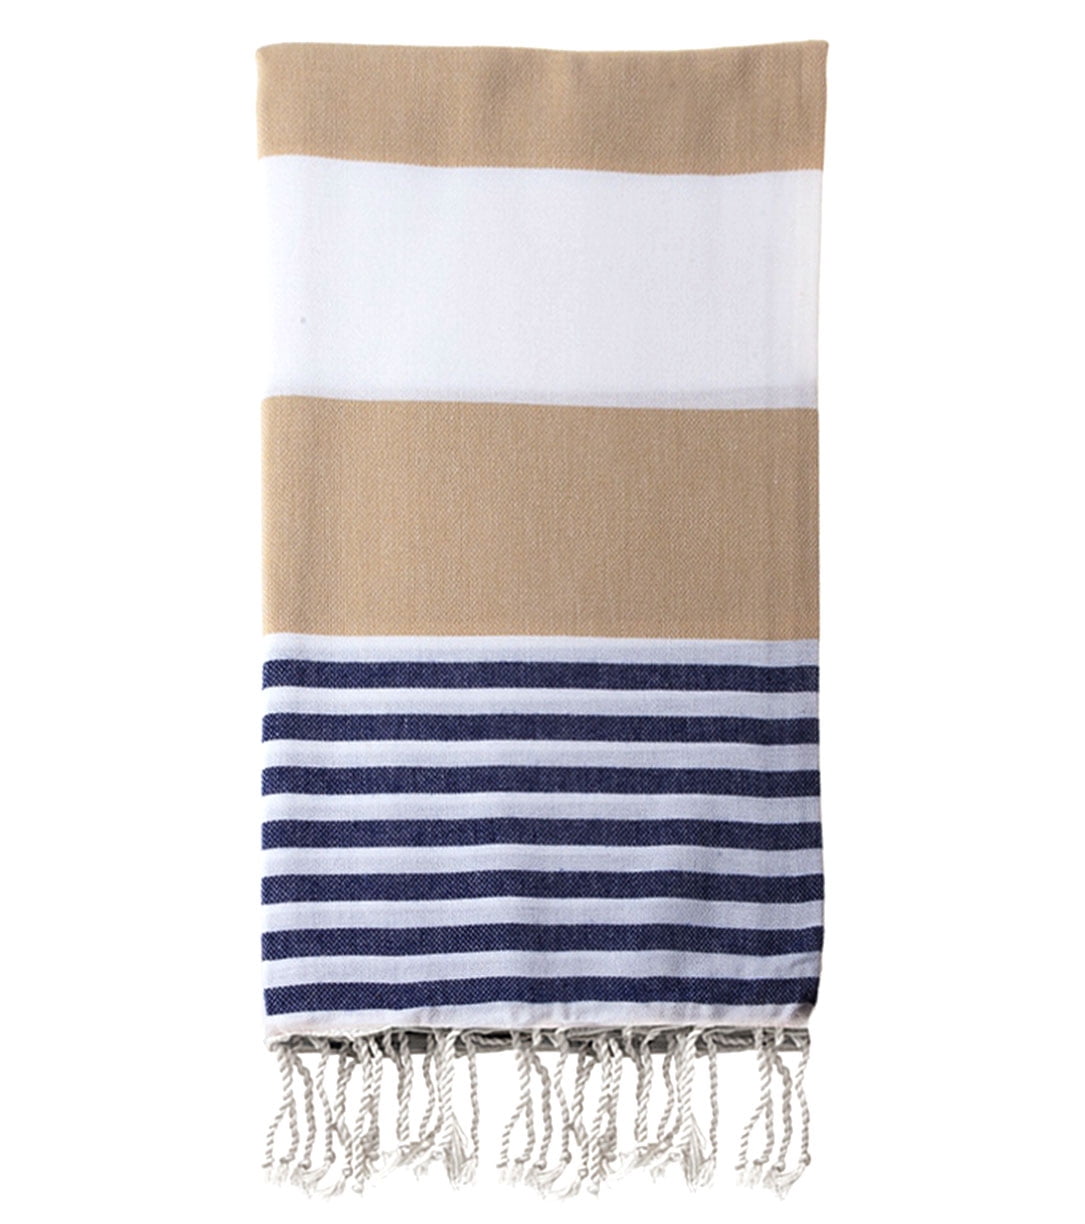 100% Cotton Herringbone Design Herringbone Turkish Towel 39X70 inches Bath Beach Peshtemal Navy